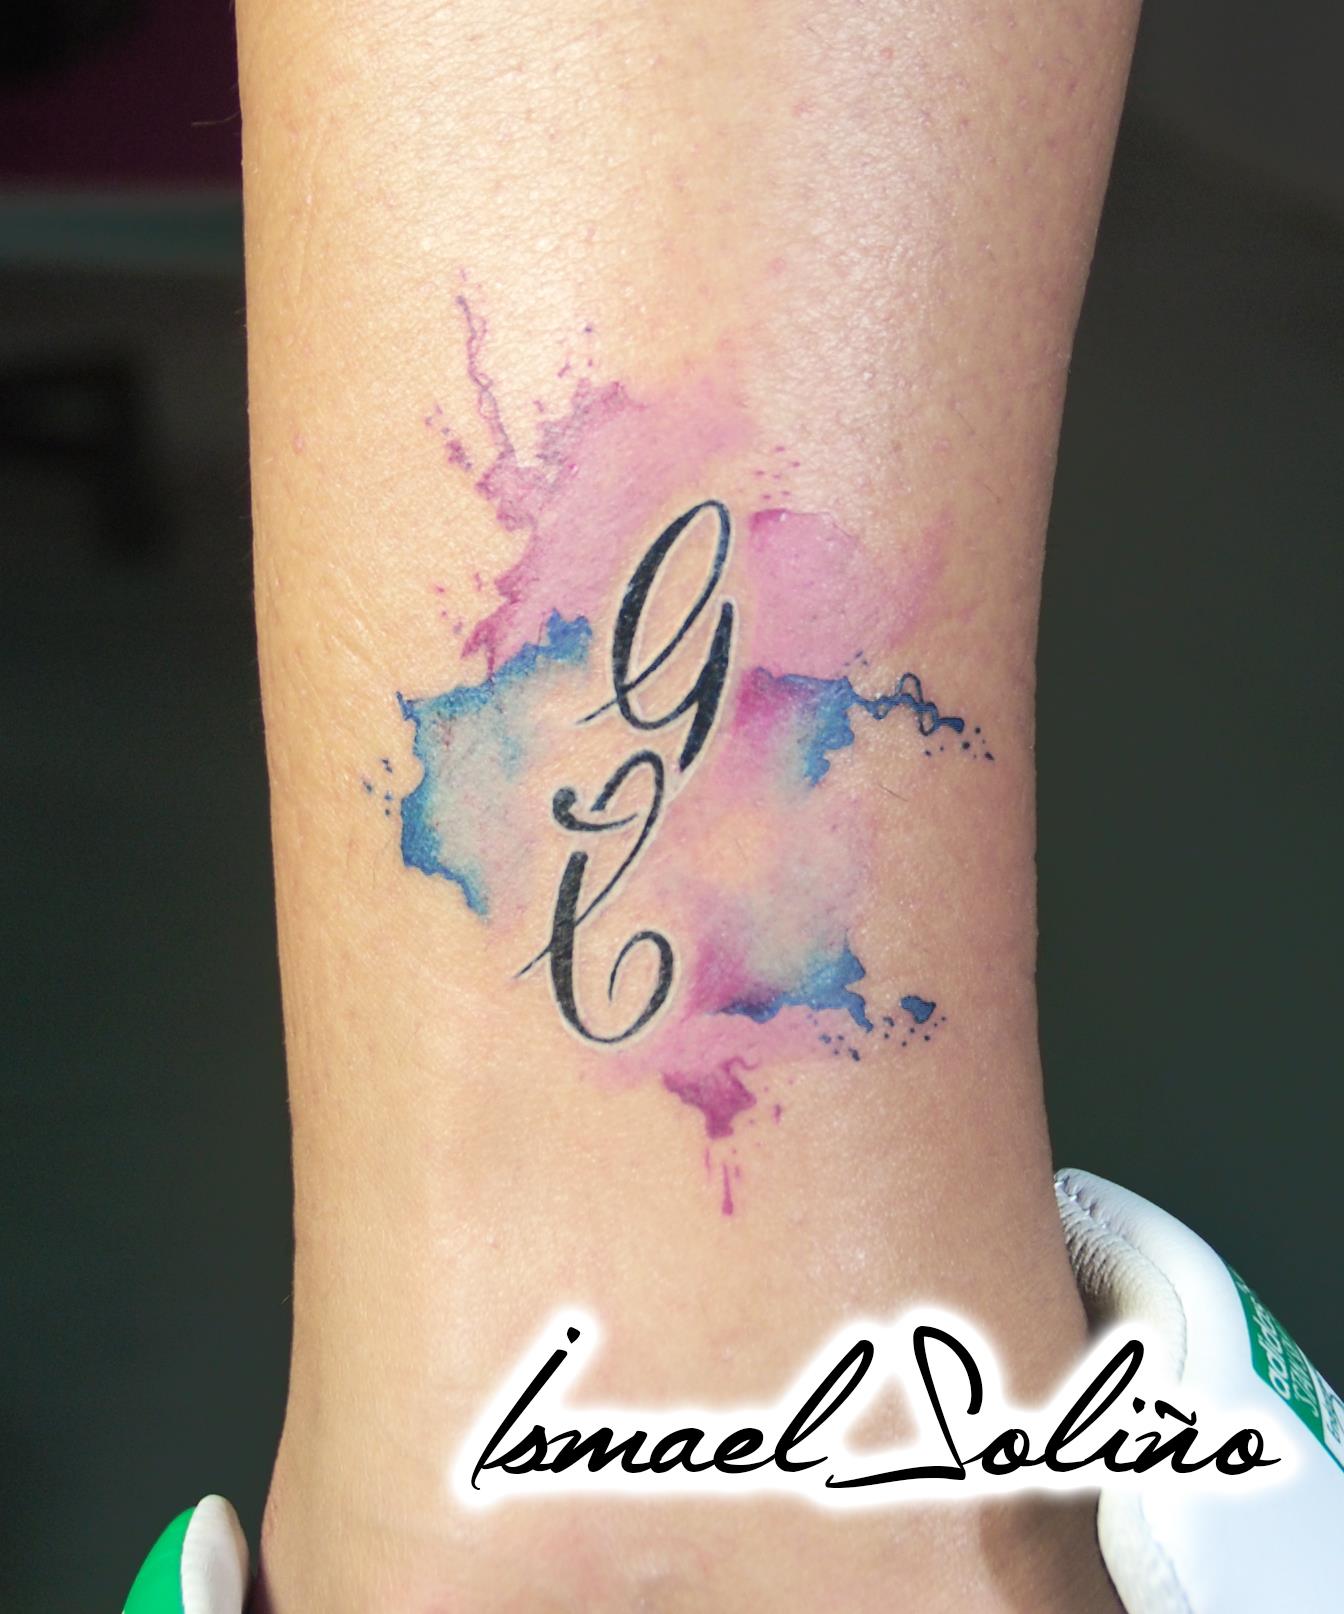 Tatuaje de 2 iniciales con manchas de pintura